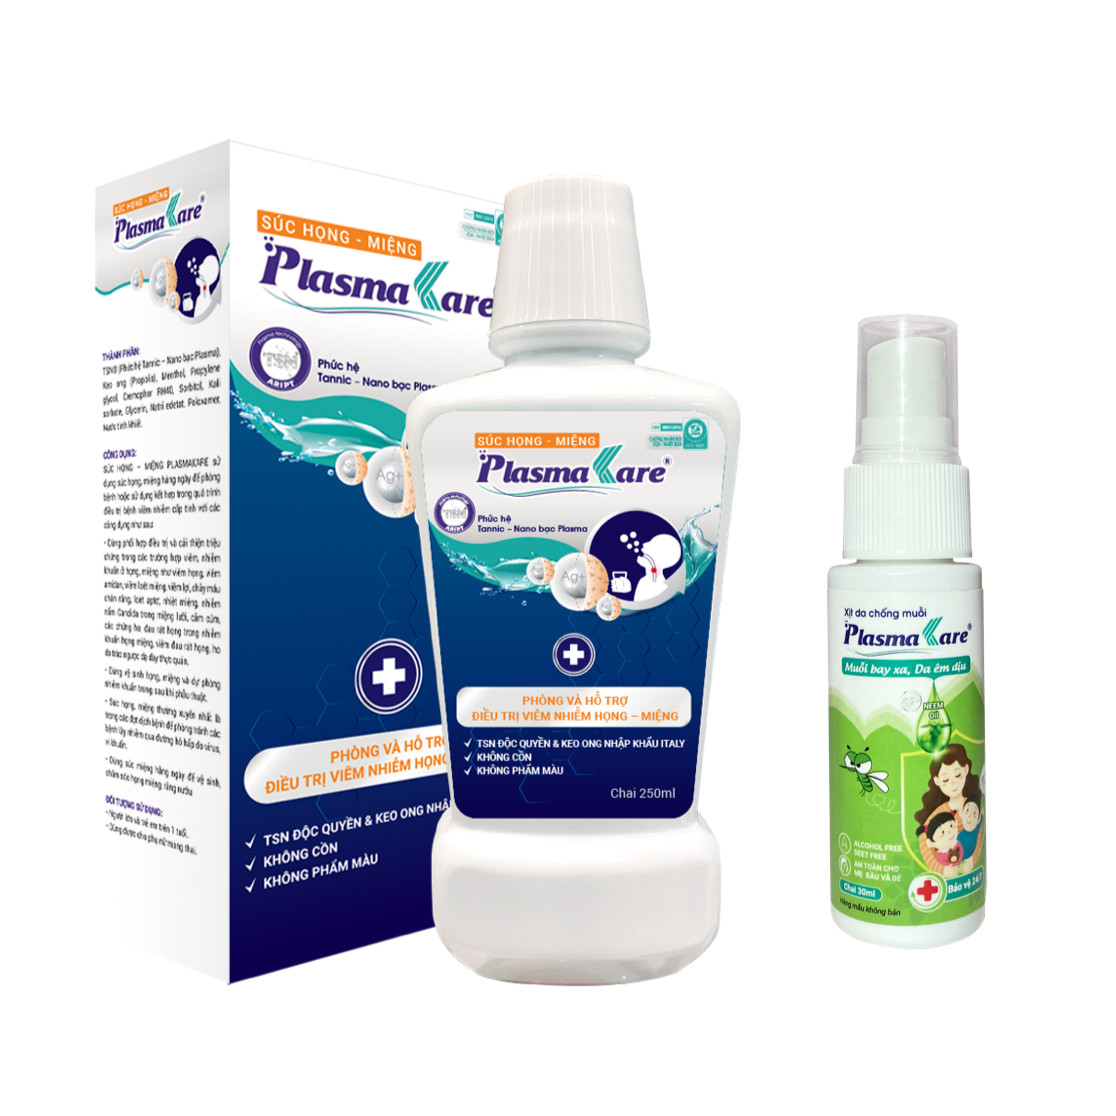 Combo 1 chai nước súc họng miệng (SHM) PlasmaKare chứa TSN tặng 1 Xịt chống muỗi PlasmaKare 30ml